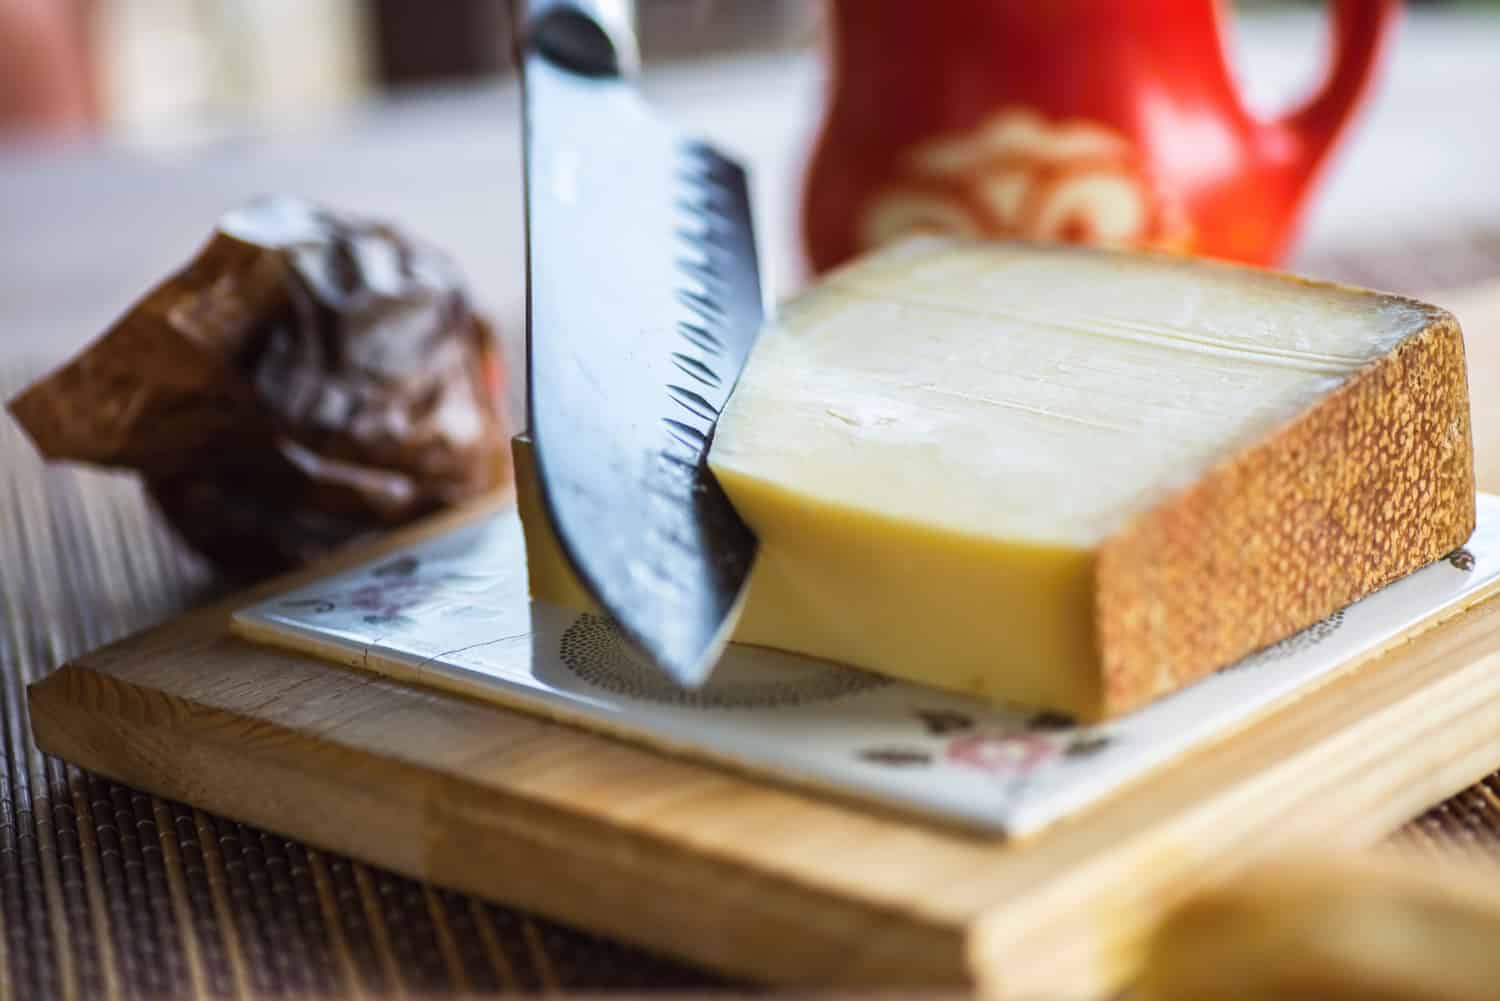 大刀在厨房板上切传统格鲁耶尔奶酪，背景是漂亮的红色罐子。bd手机下载